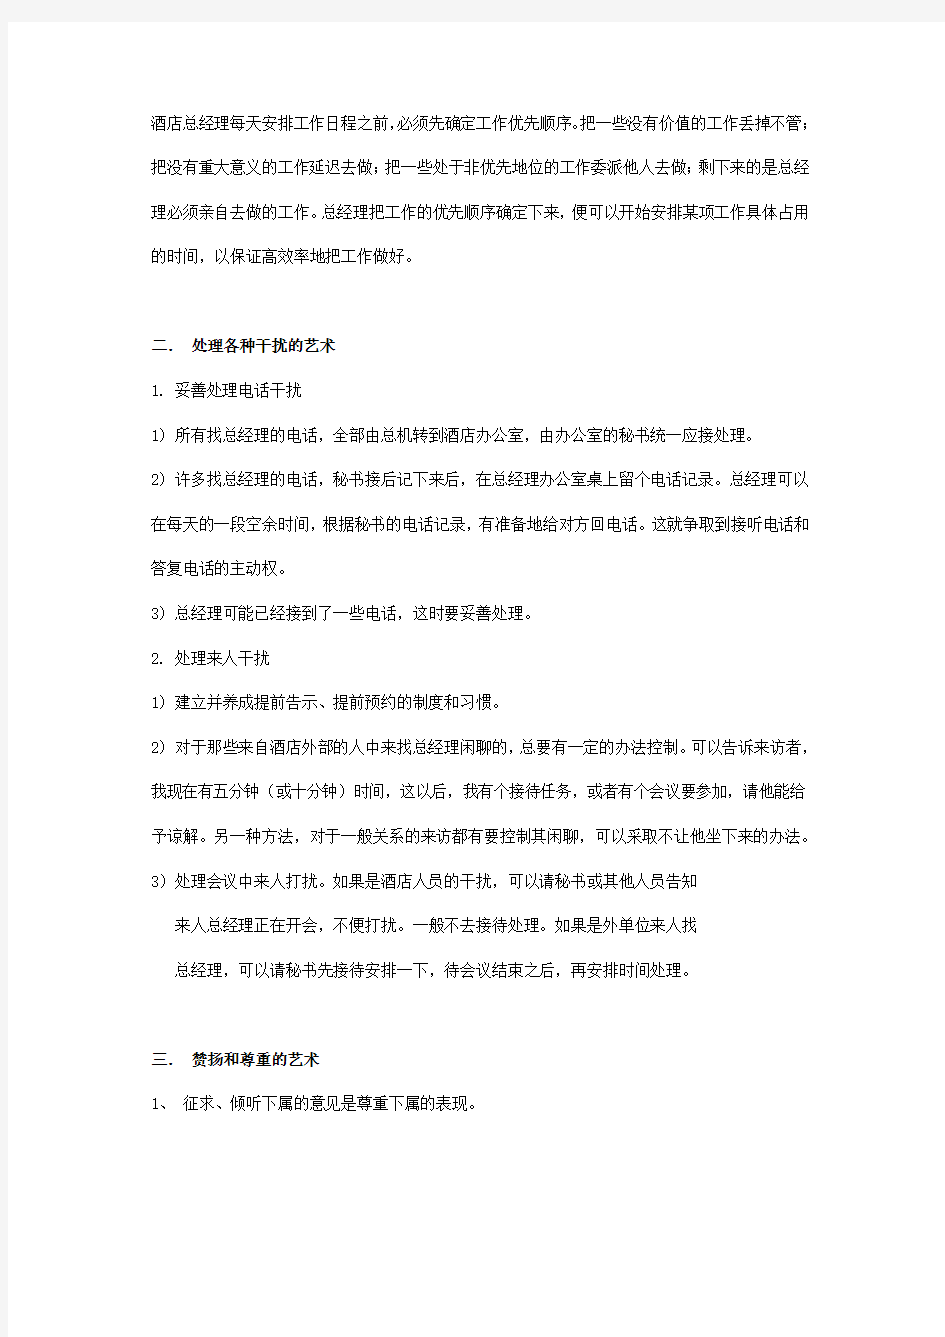 鑫进蛟龙大酒店上半年工作总结和下半年计划文档 (2)